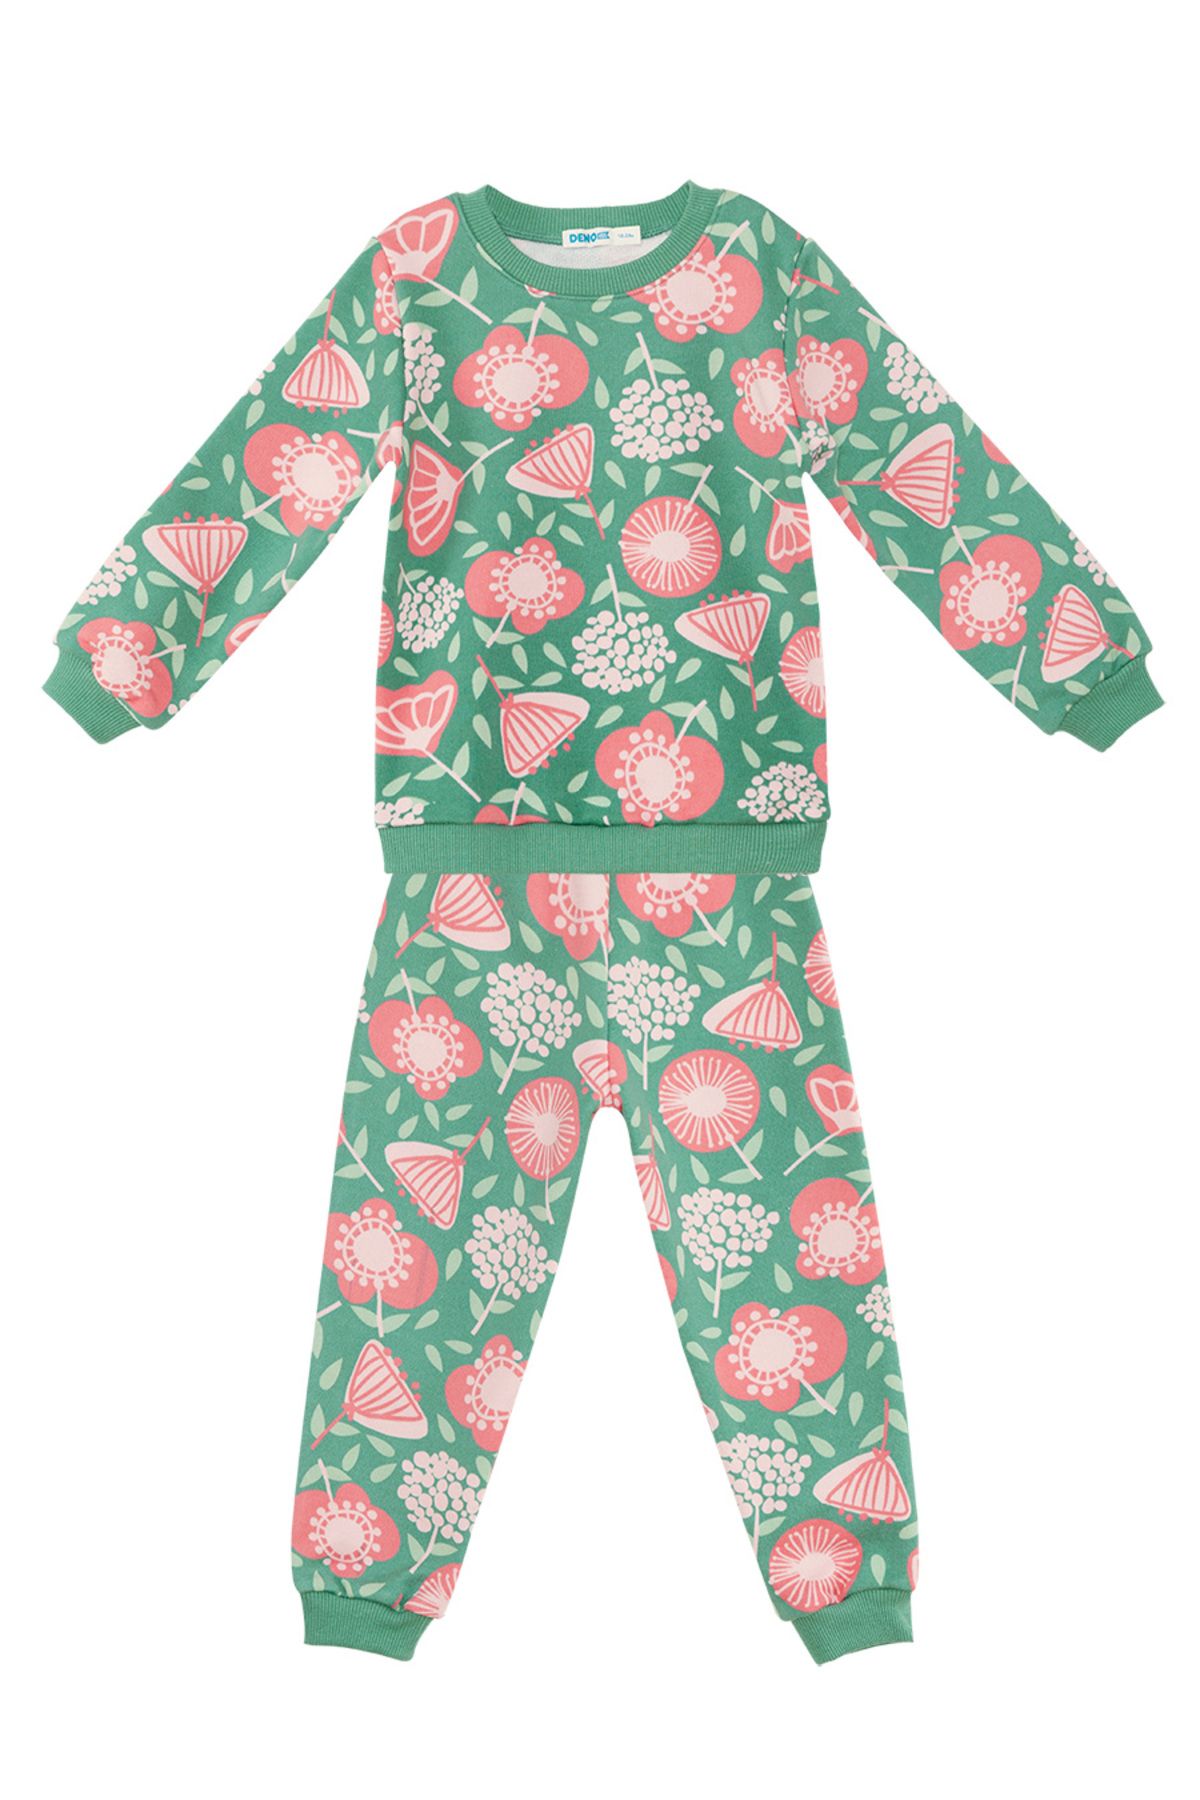 Denokids Pembe Çiçekli Kız Bebek Yeşil Eşofman Takım